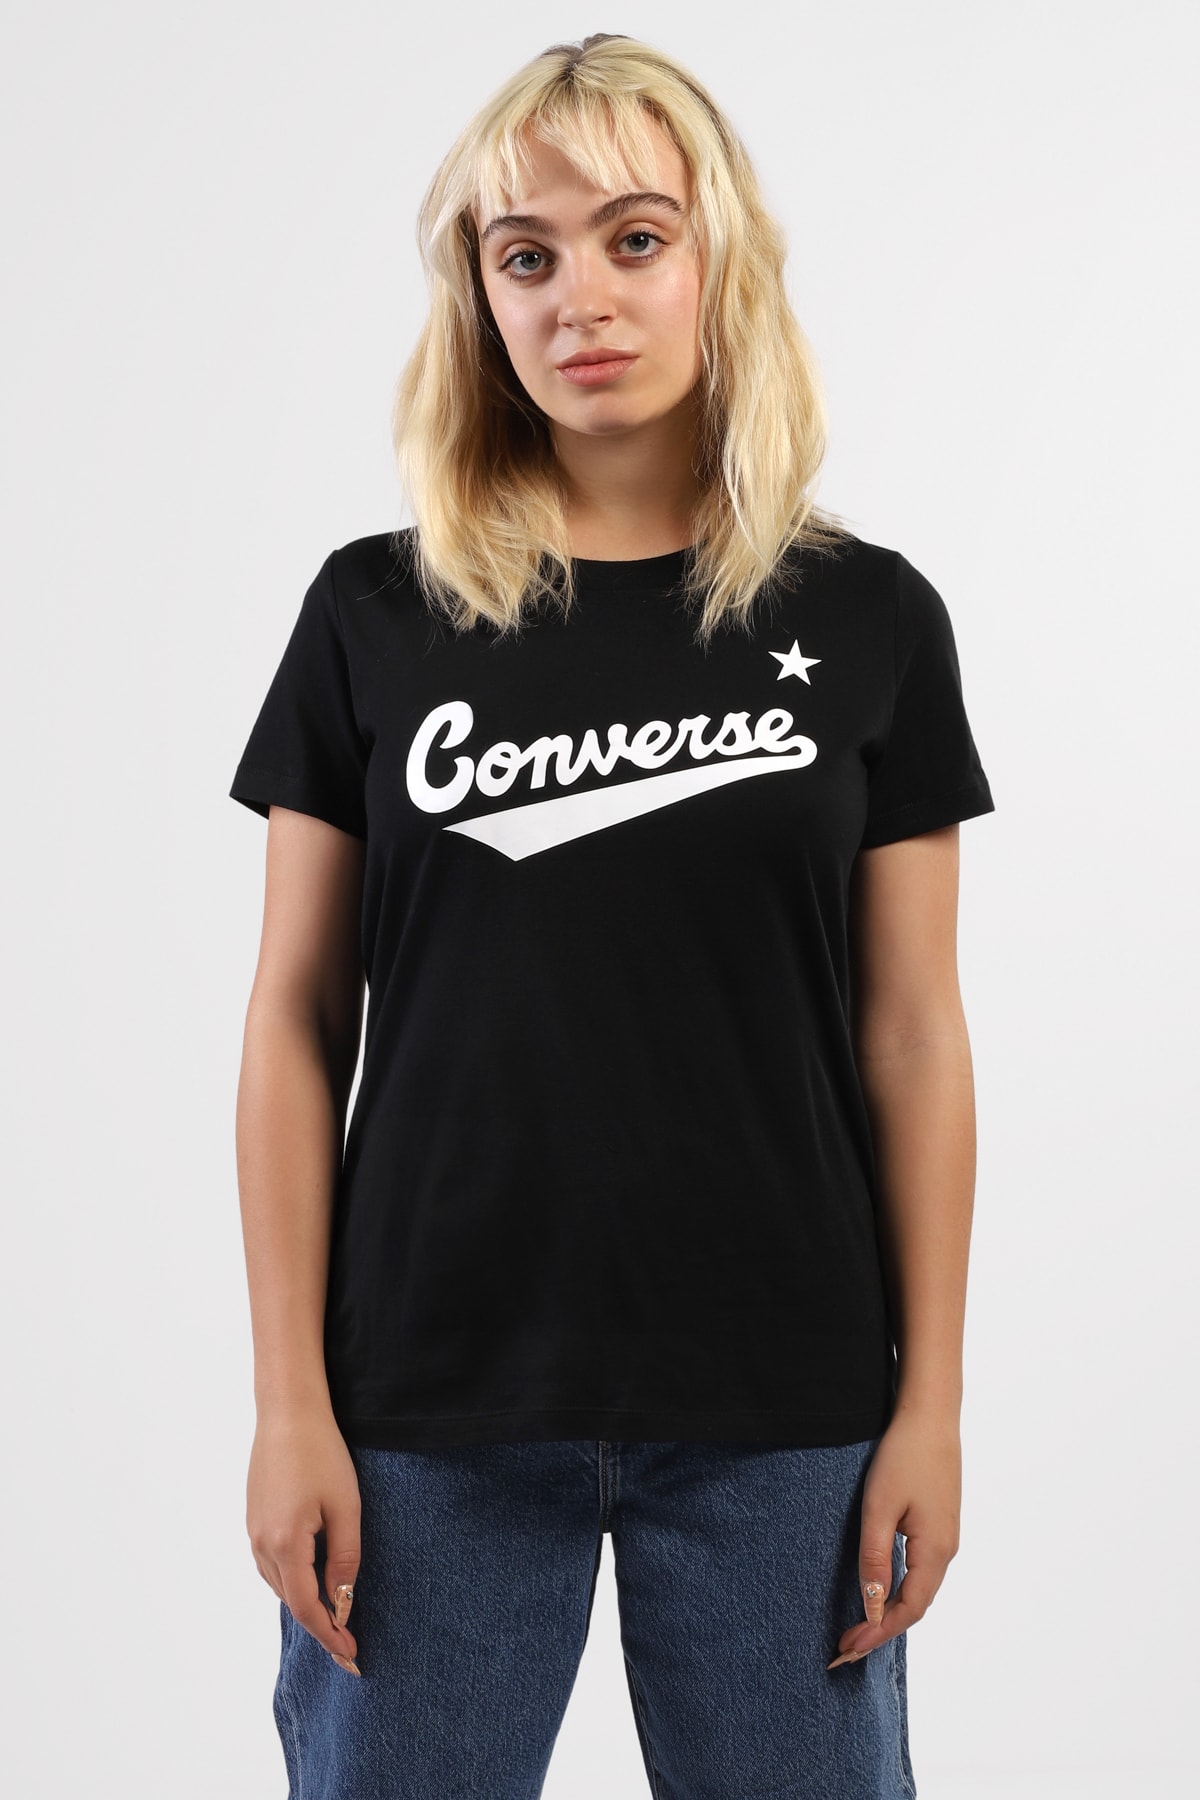 converse T-Shirt Schwarz Regular Fit Fast ausverkauft